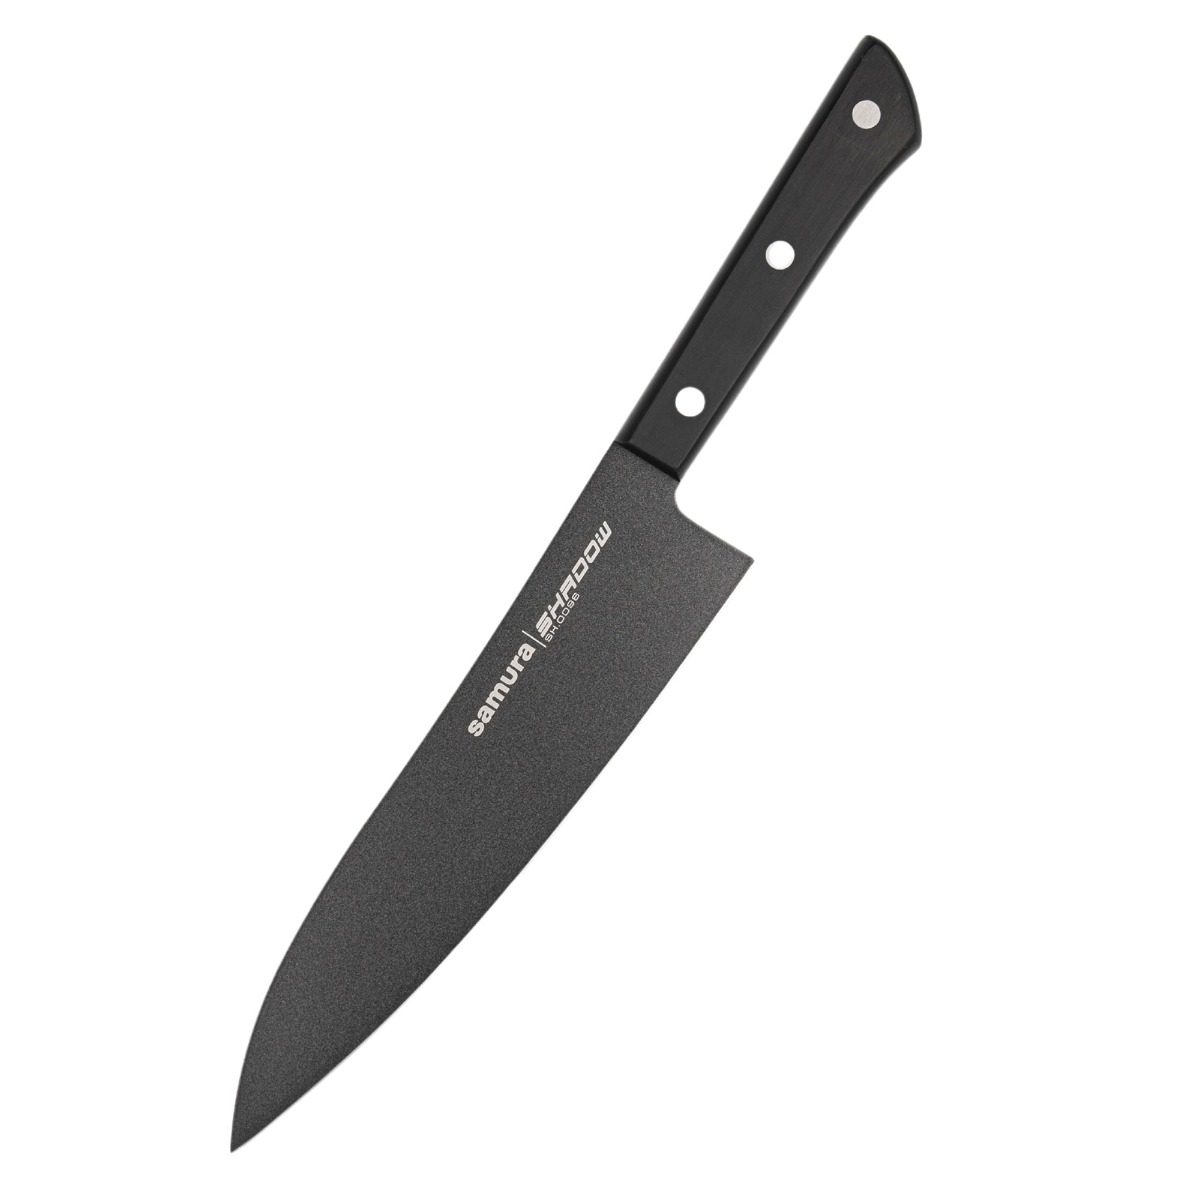 Μαχαίρι Grand Santoku 19.7cm